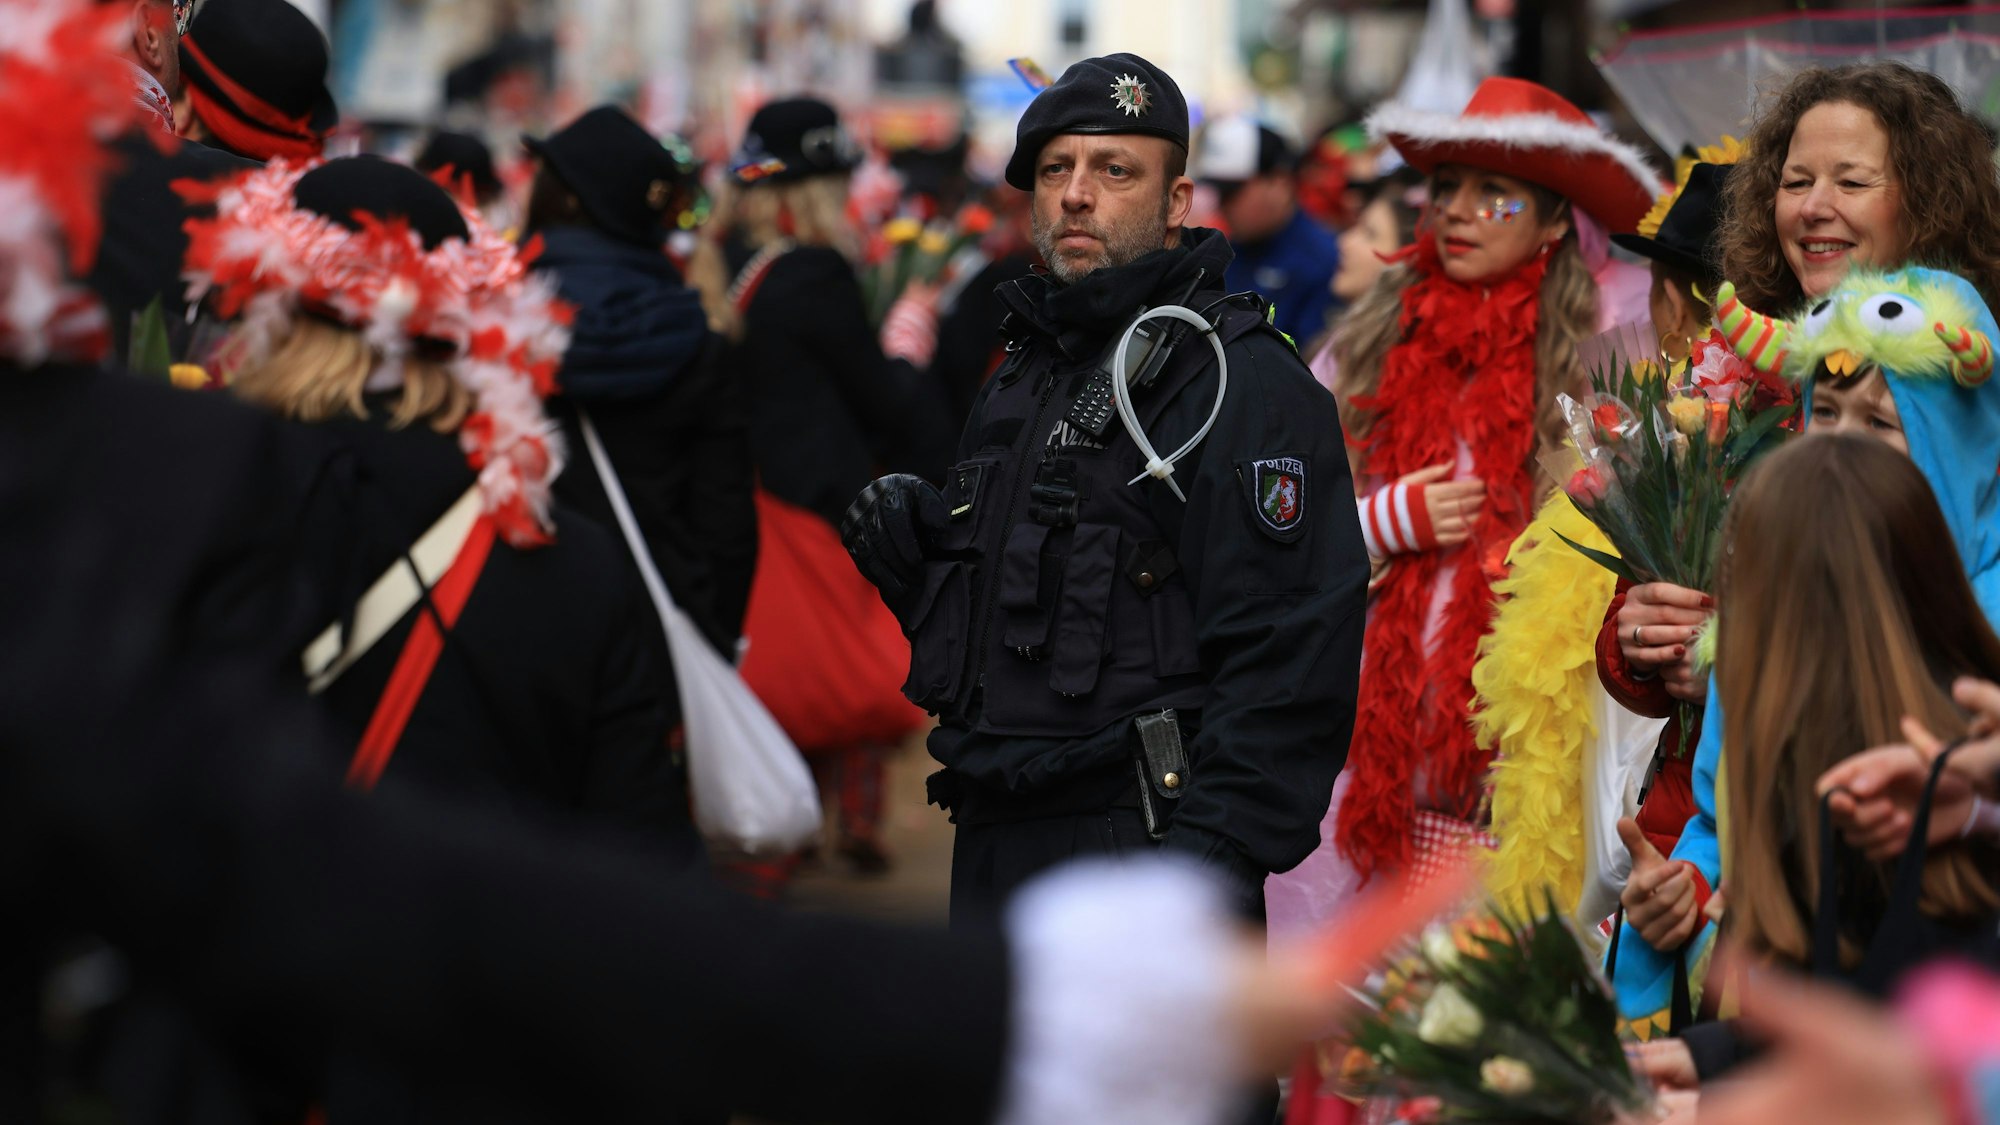 Ein Polizist steht am Zugweg. Die Polizei ist mit hunderten Beamten aus ganz Nordrhein-Westfalen im Einsatz. Daneben gibt es weiteres Sicherheitspersonal von Karnevalsgesellschaften sowie Festkomitee.